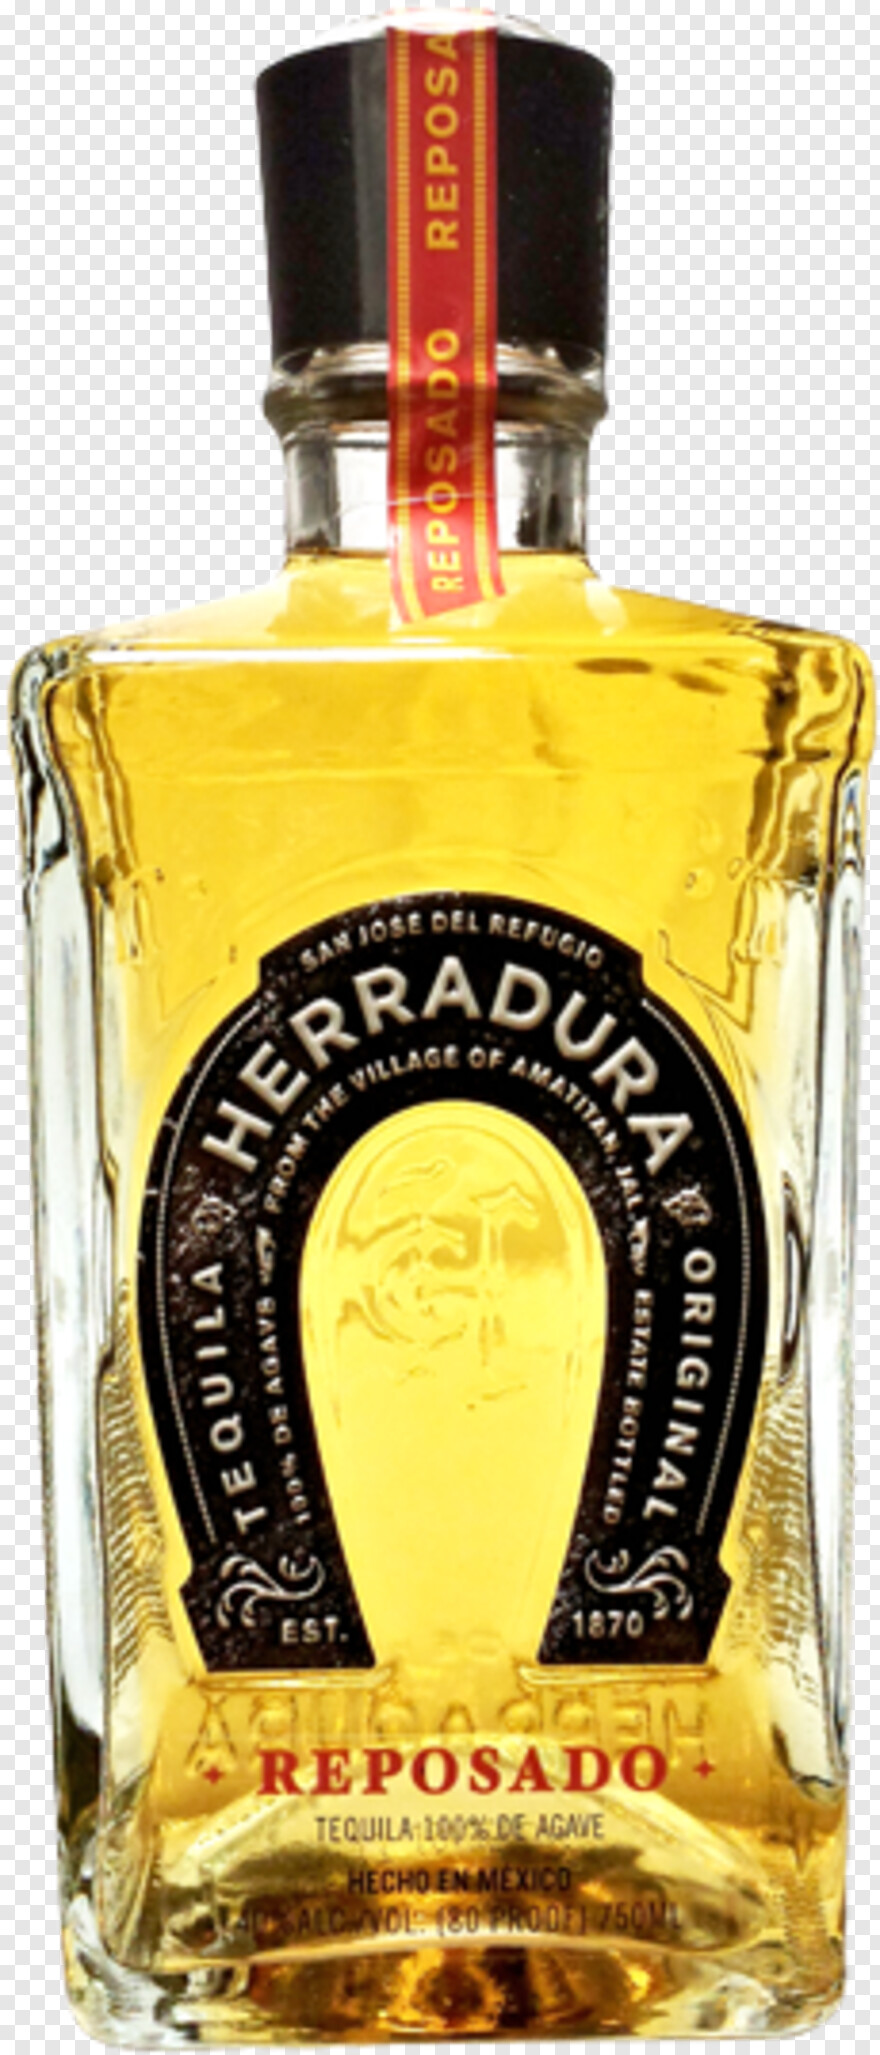 tequila-bottle # 325638